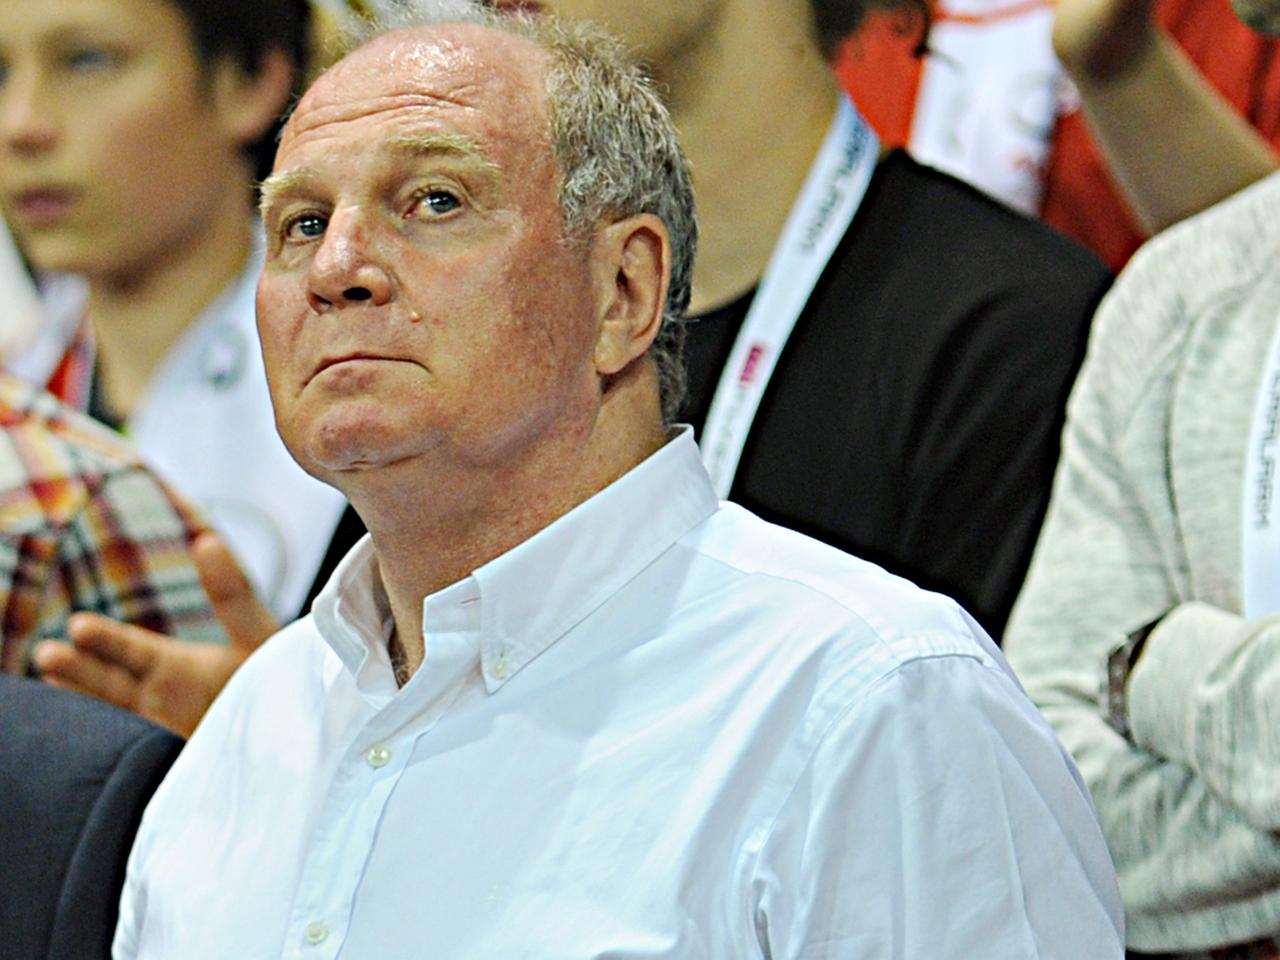 Der ehemalige Präsident des FC Bayern München, Uli Hoeneß, hat inzwischen seine Haftstrafe angetreten.